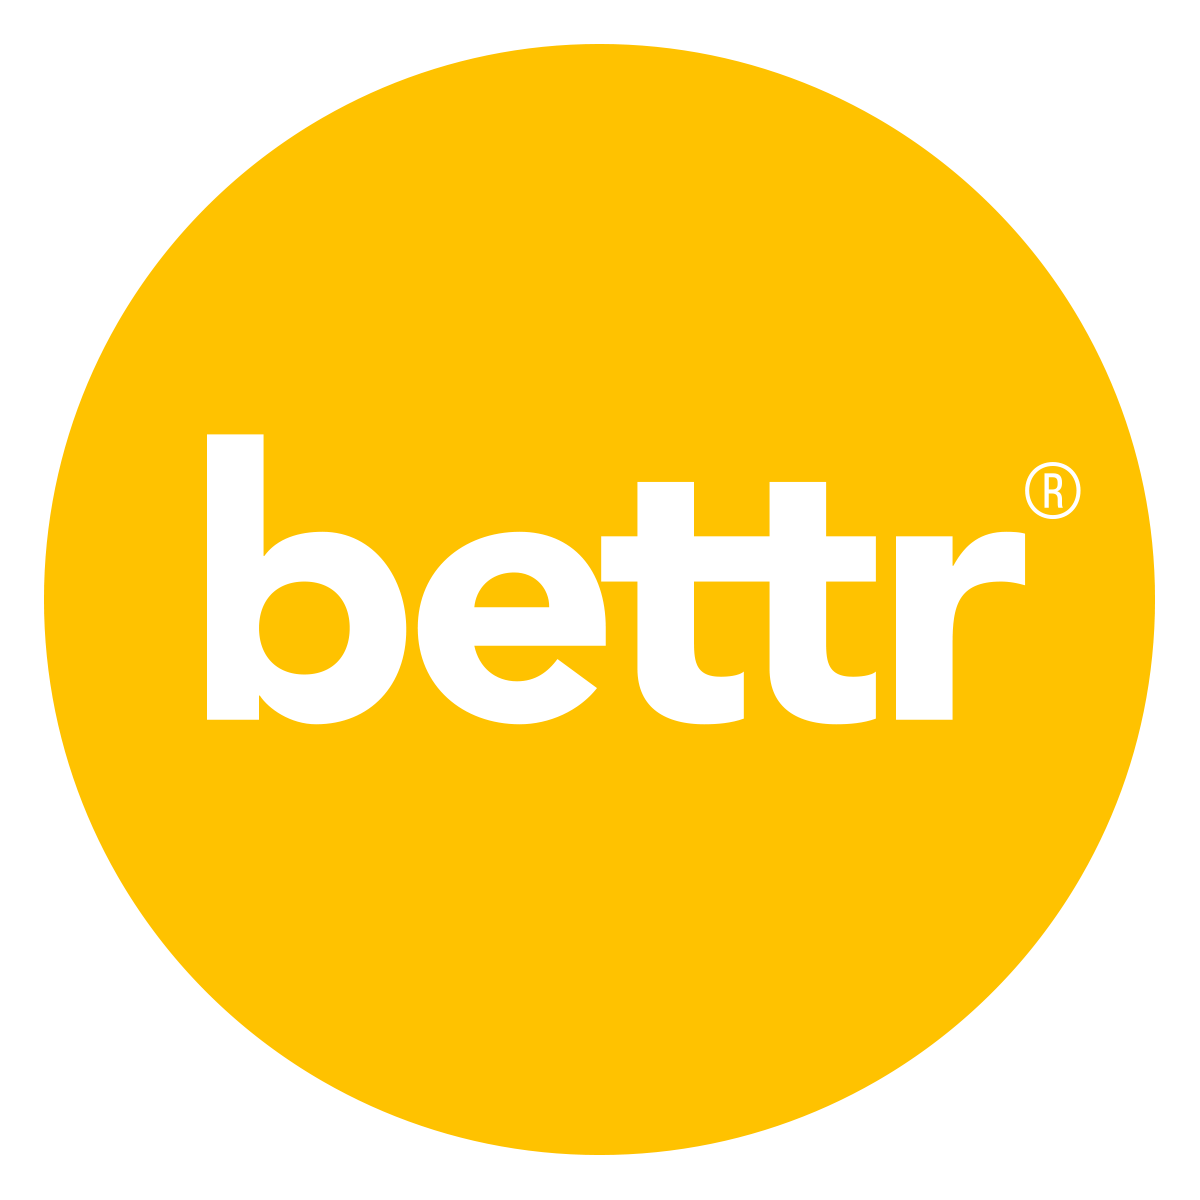 Bettr Barista Pte Ltd